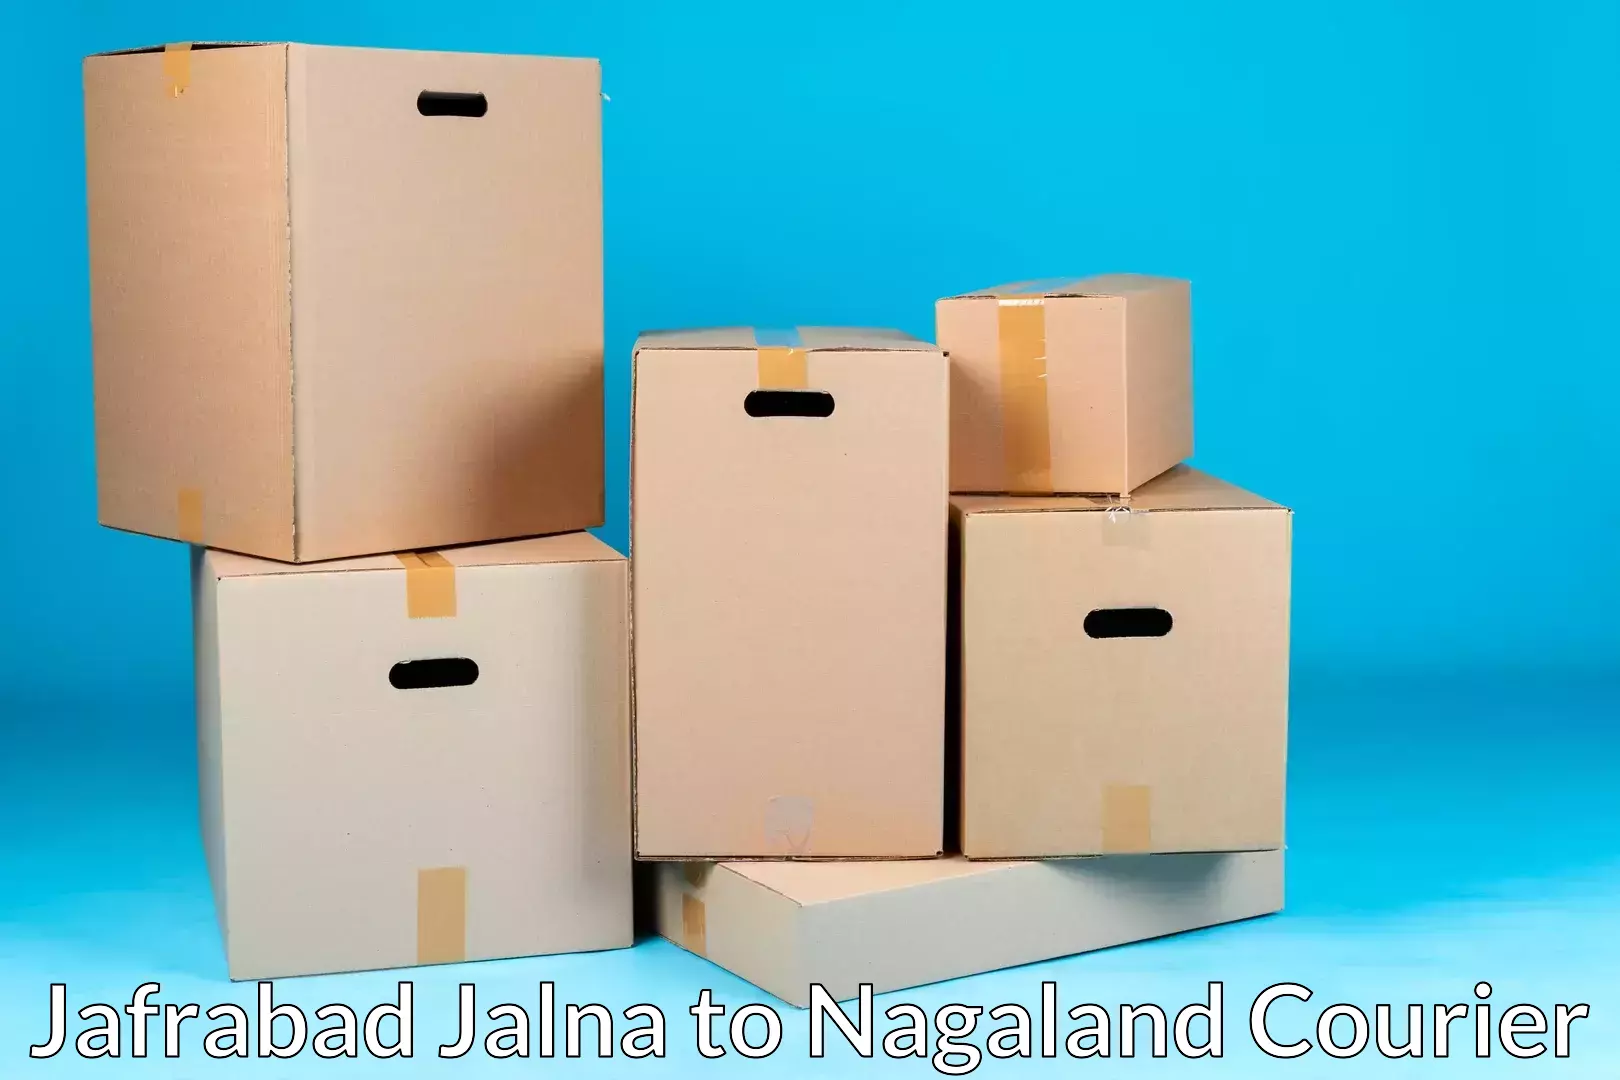 Furniture delivery service Jafrabad Jalna to Nagaland